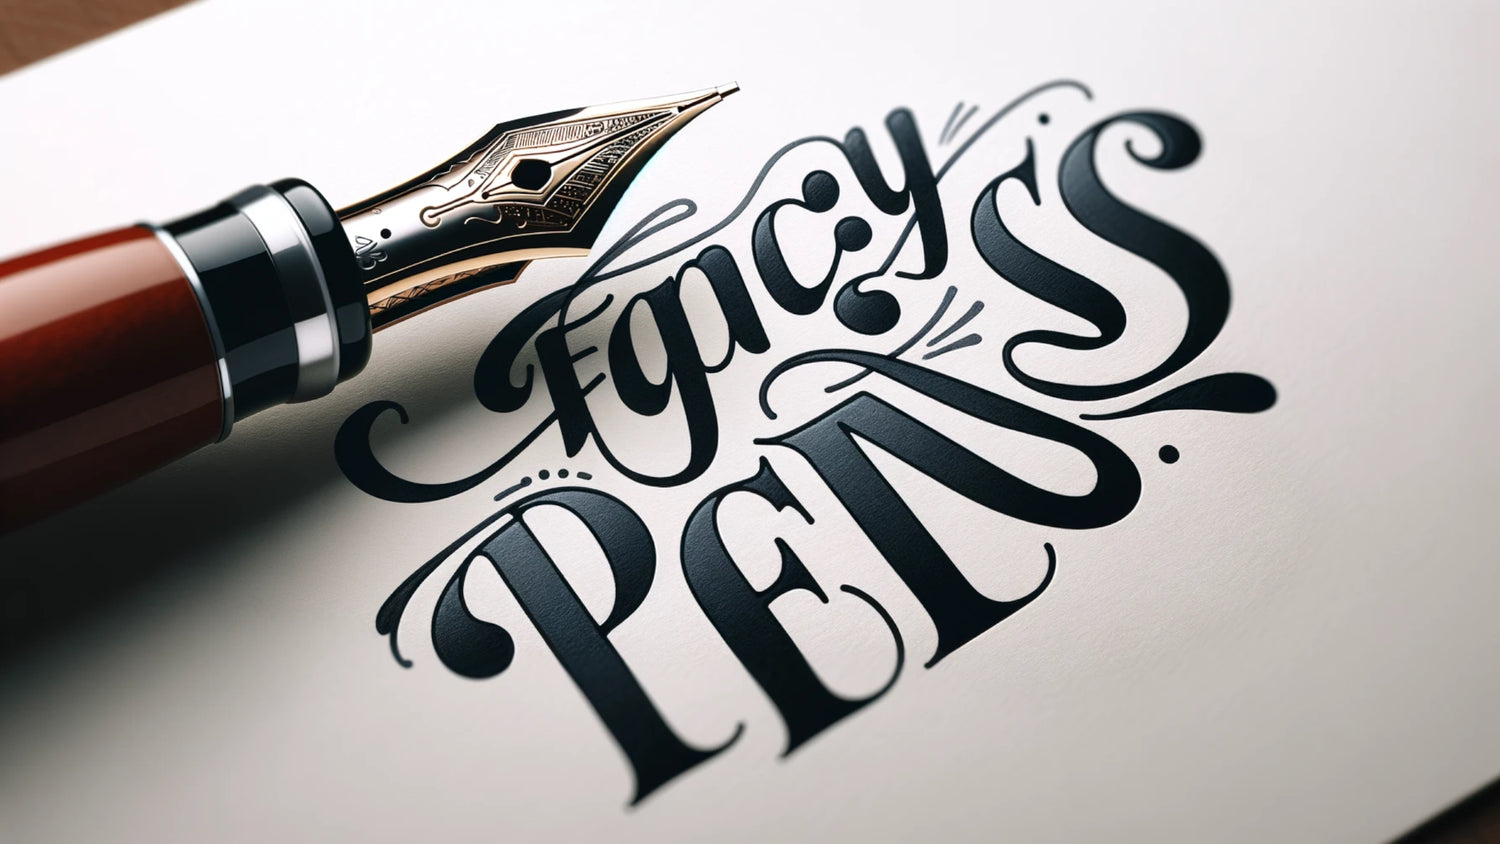 Fancy Pens by Pitchman Pens